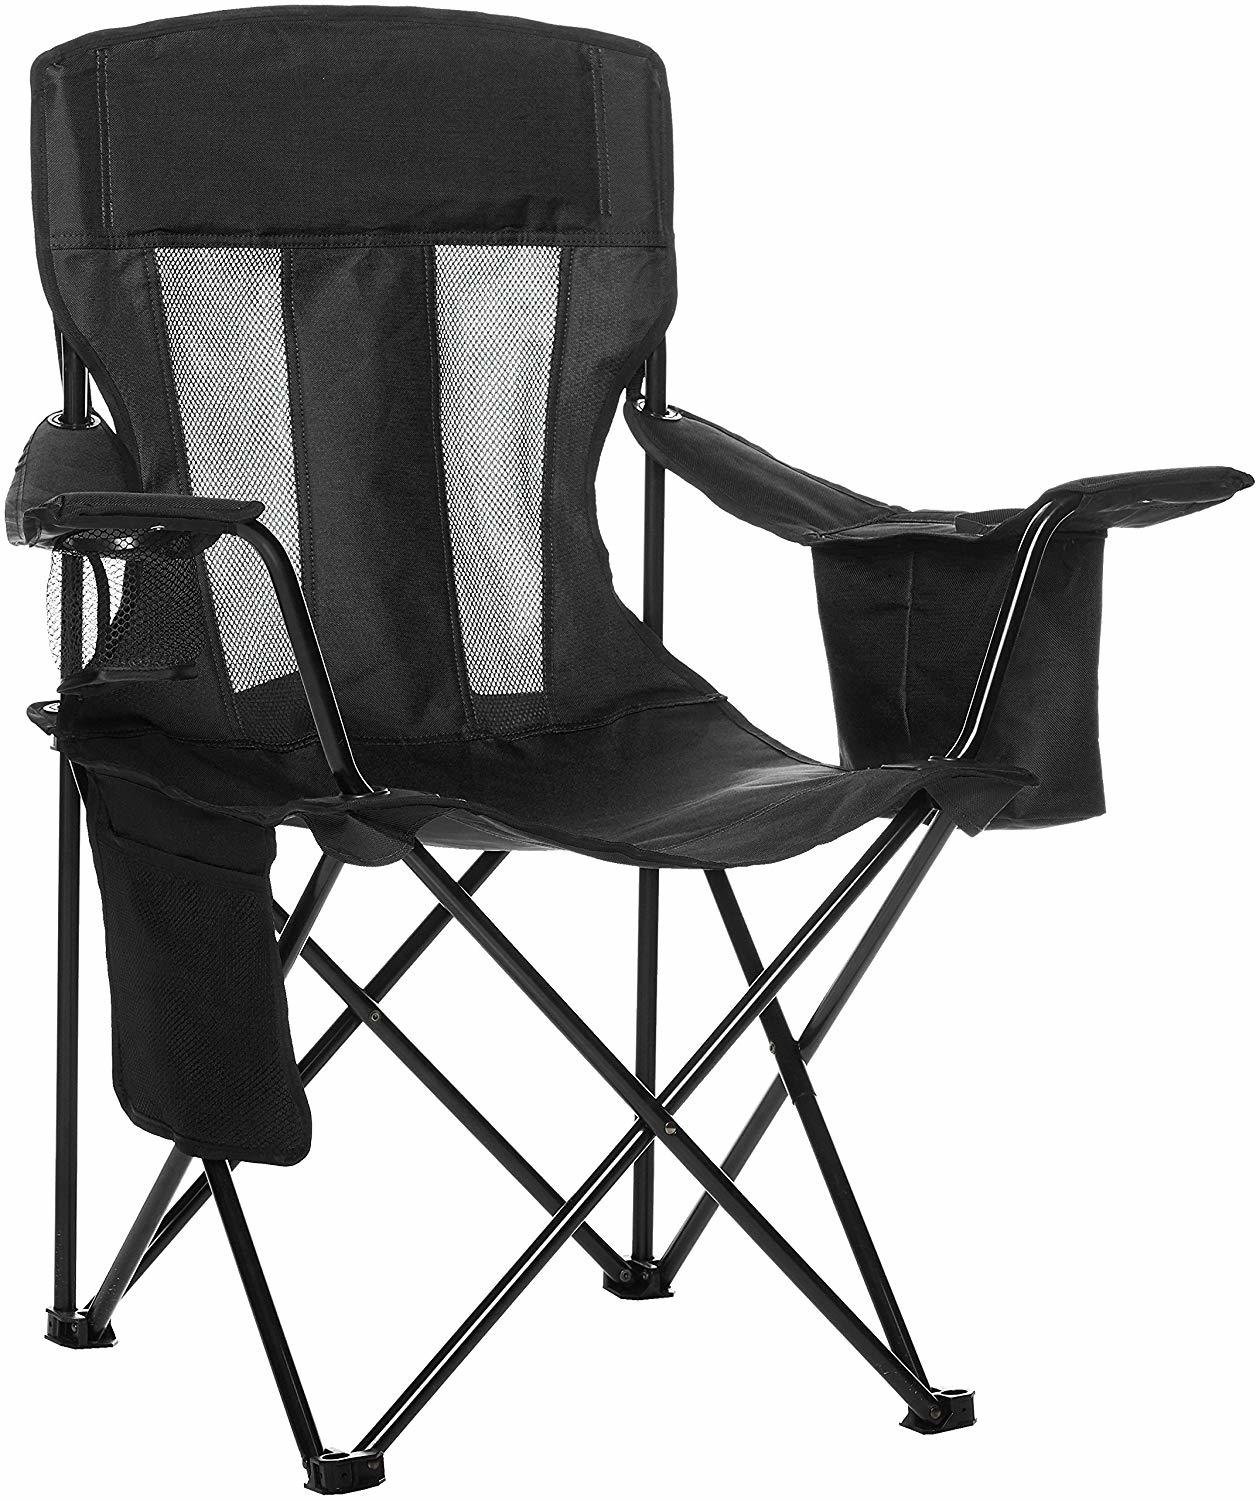 AmazonBasics Camping Chair